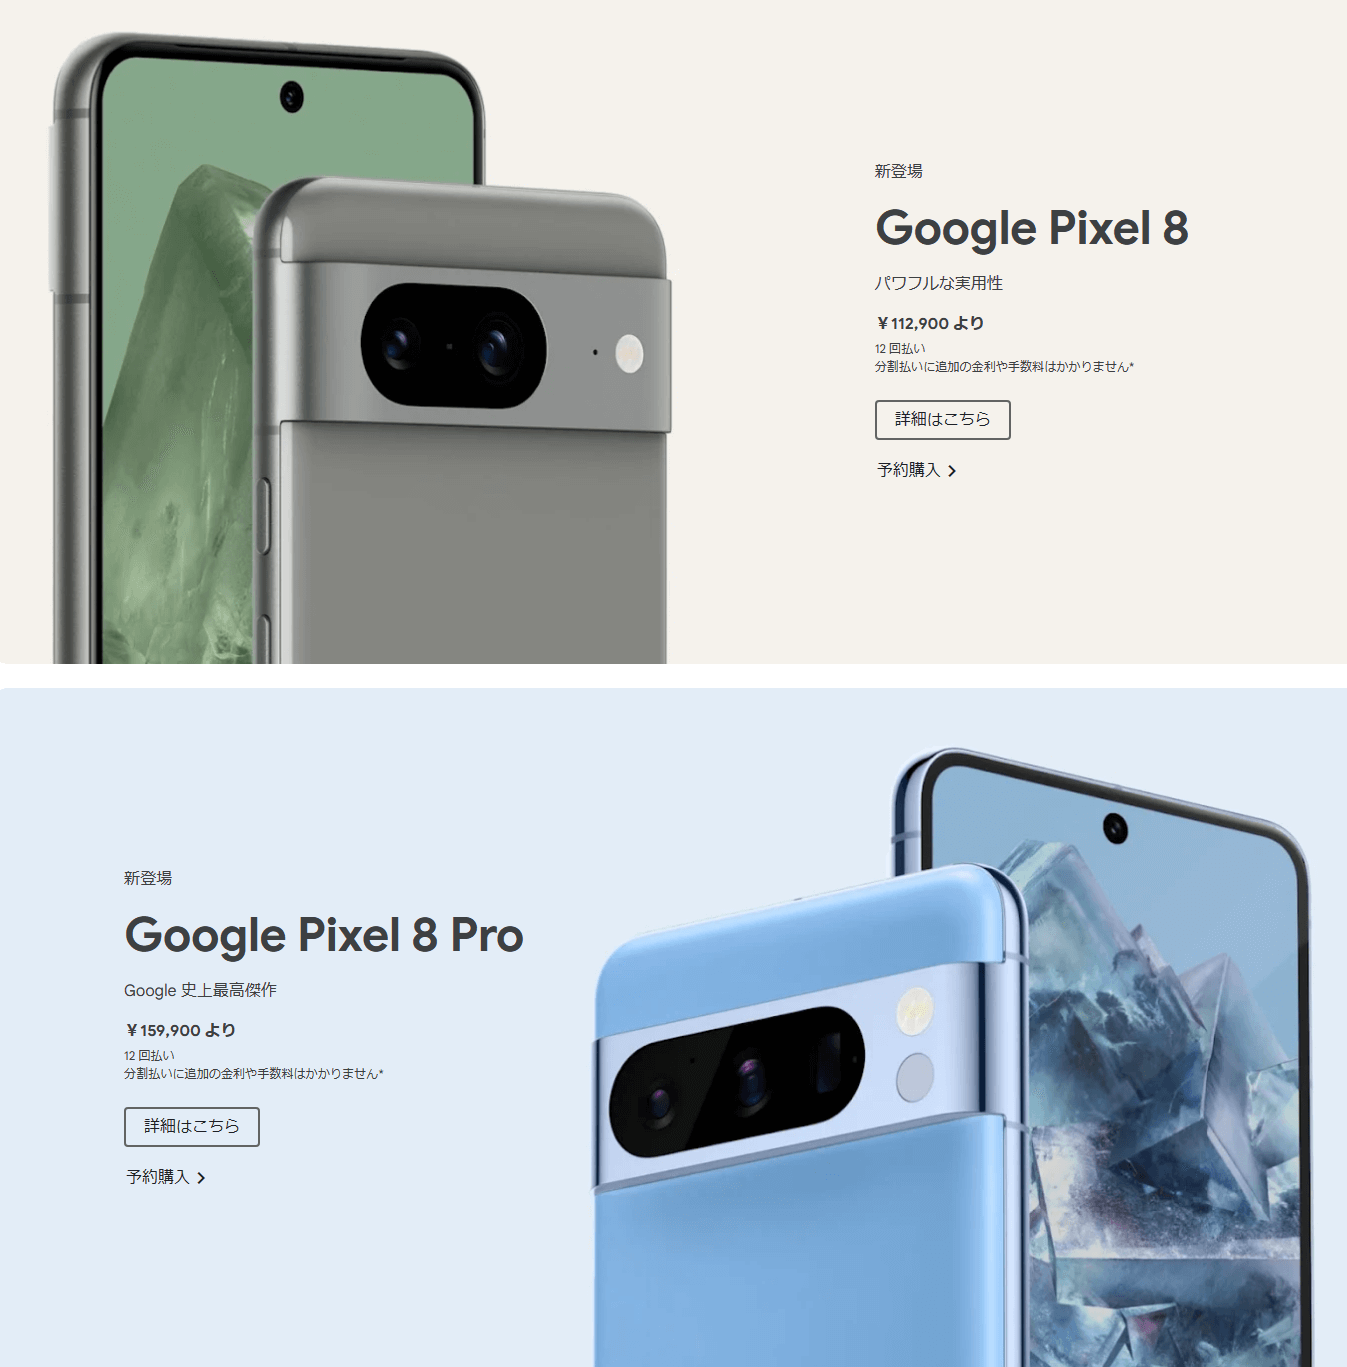 「Google Pixel 8 / Pro」の価格、スペック、キャンペーンまとめ - Googleストアやキャリアでおトクに購入する方法